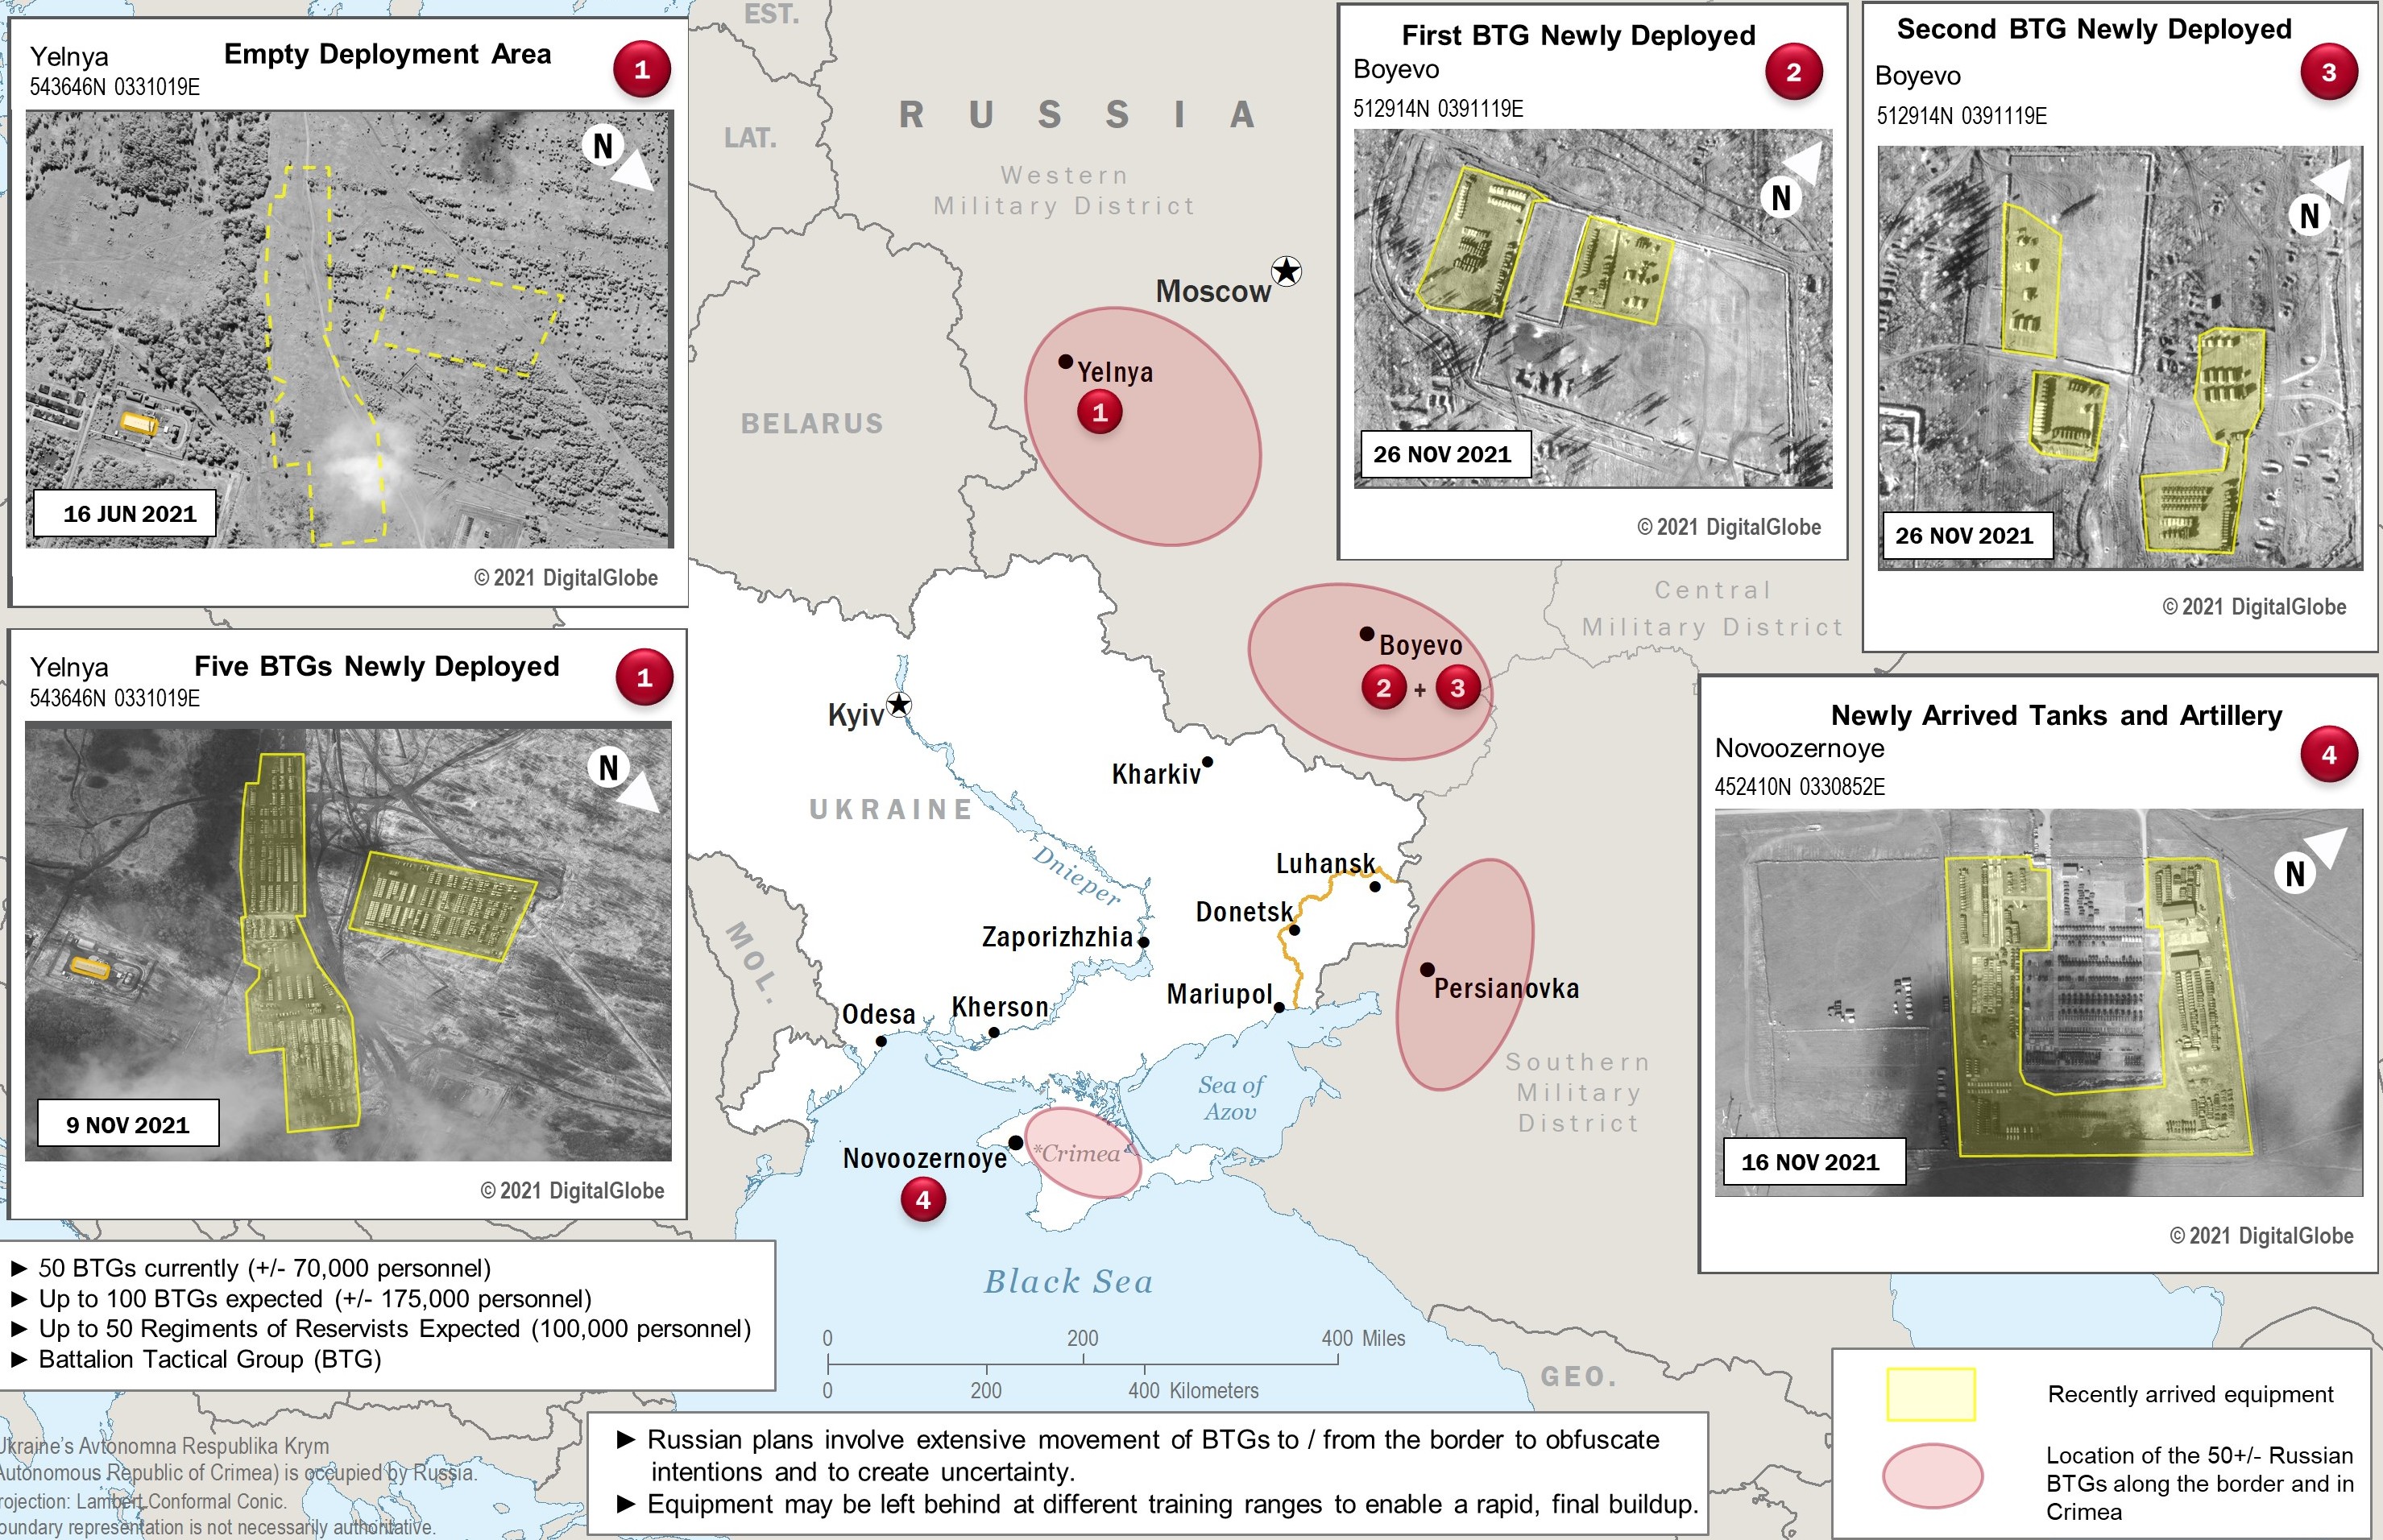 Punca perang russia ukraine